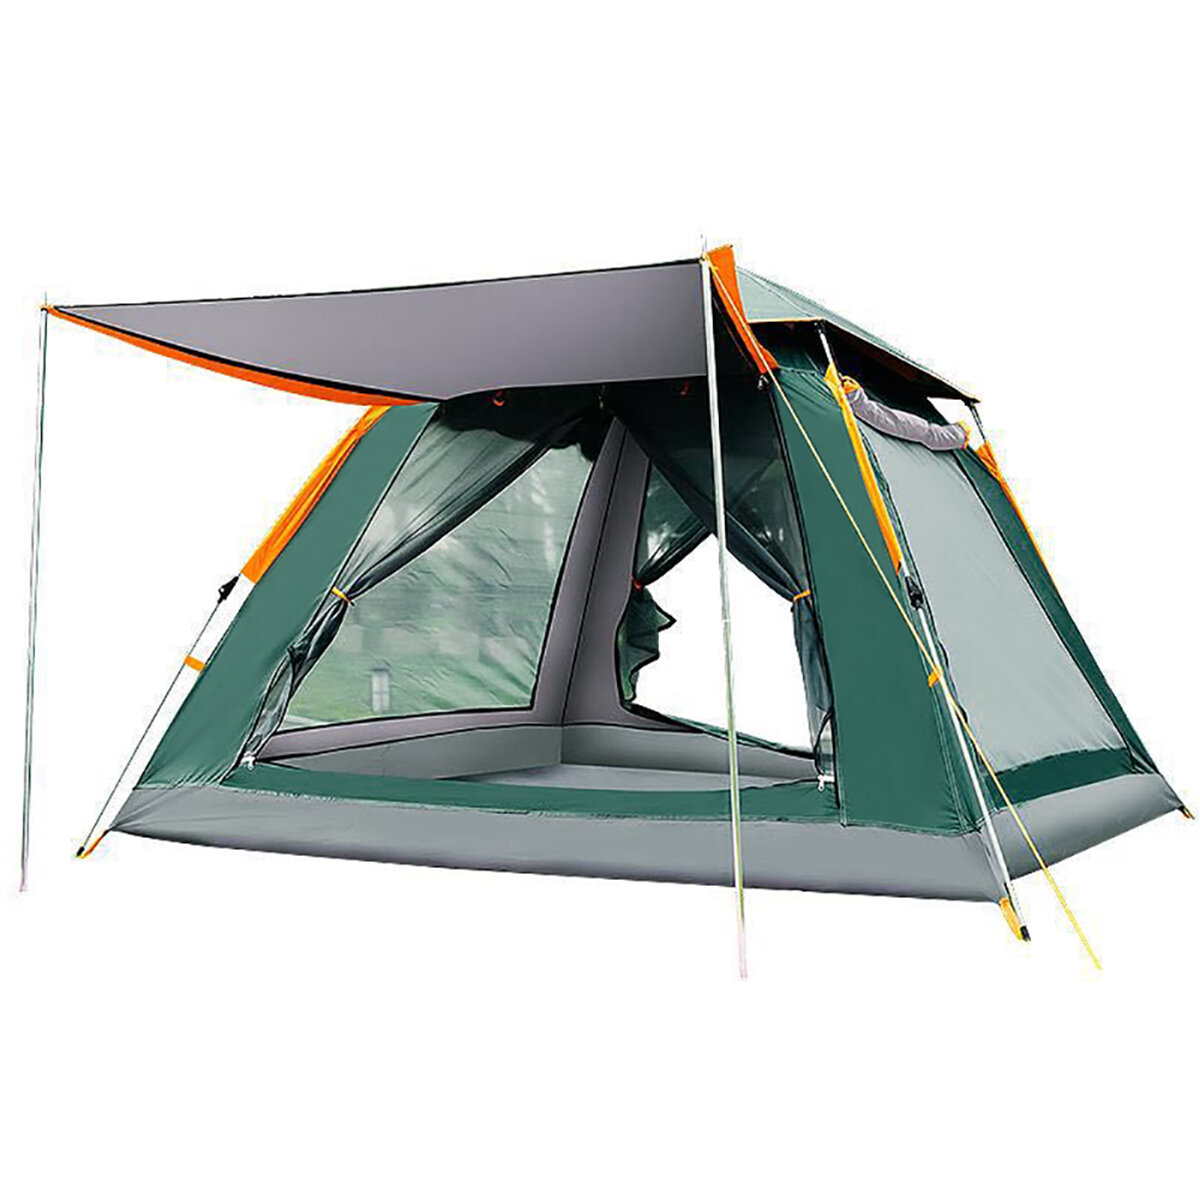 3-4 osoby/5-8 osób automatyczny namiot kempingowy z prędkością 210T Oxford tkaniny dwupokładowy ochrona przed słońcem wodoodporny namiot osłona przeciwsłoneczna otwarty namiot do uprawiania turystyki pieszej wspinaczka